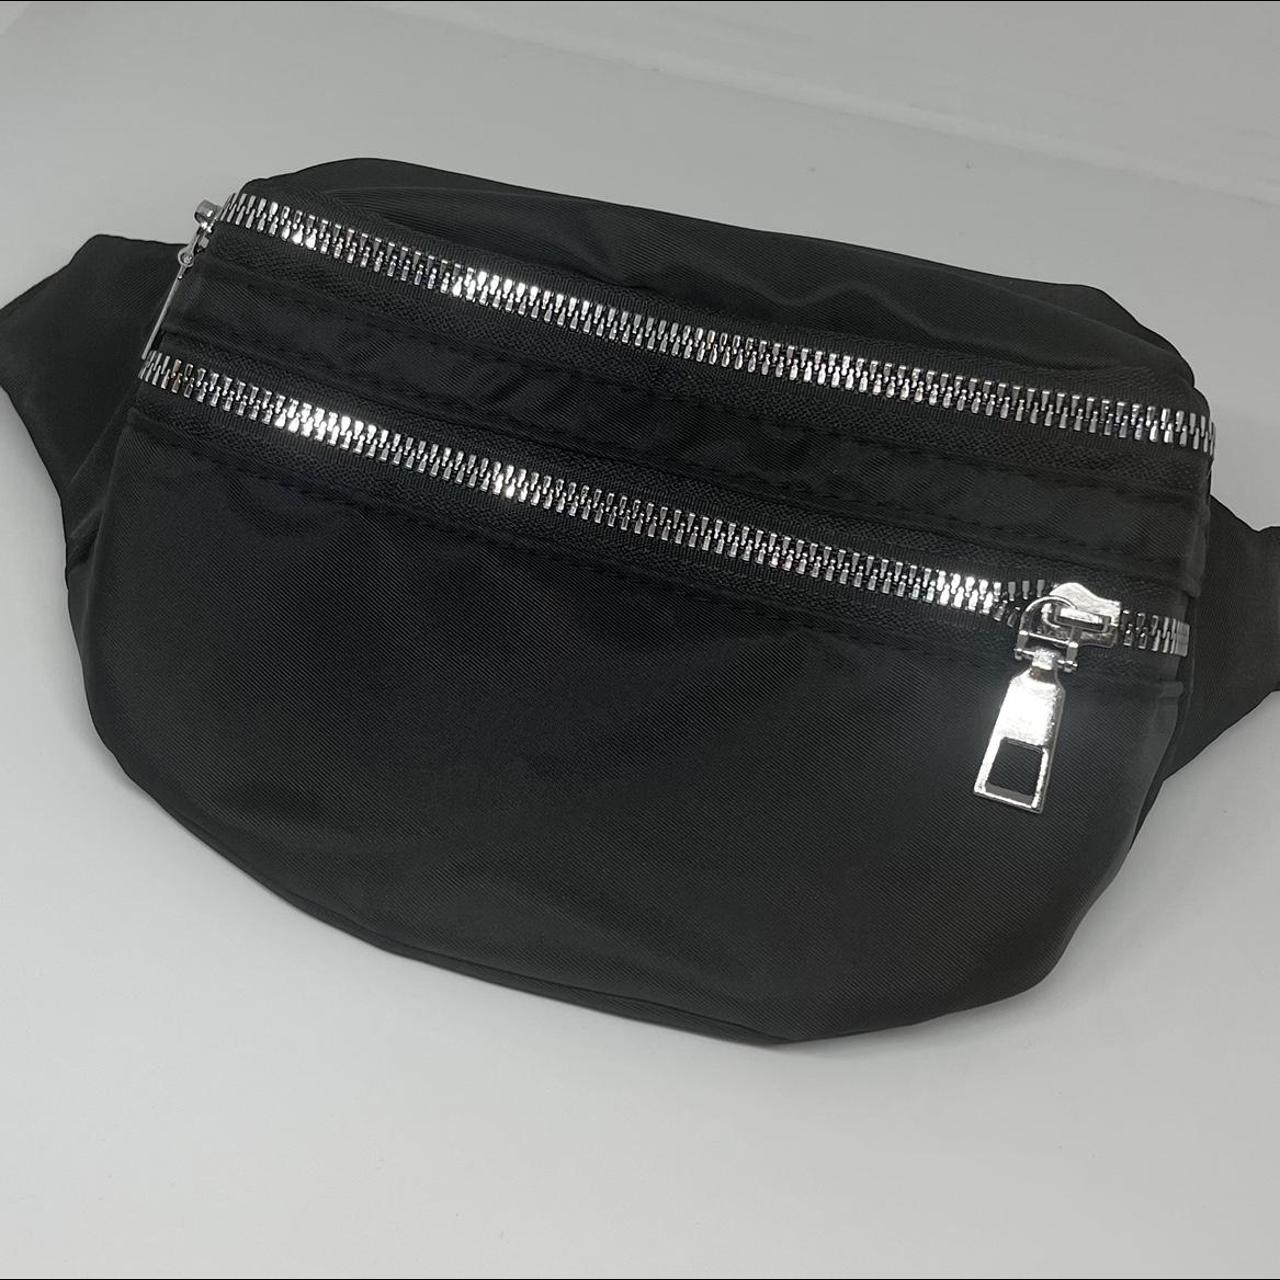 Double zip bum bag in black Adjustable... - Depop